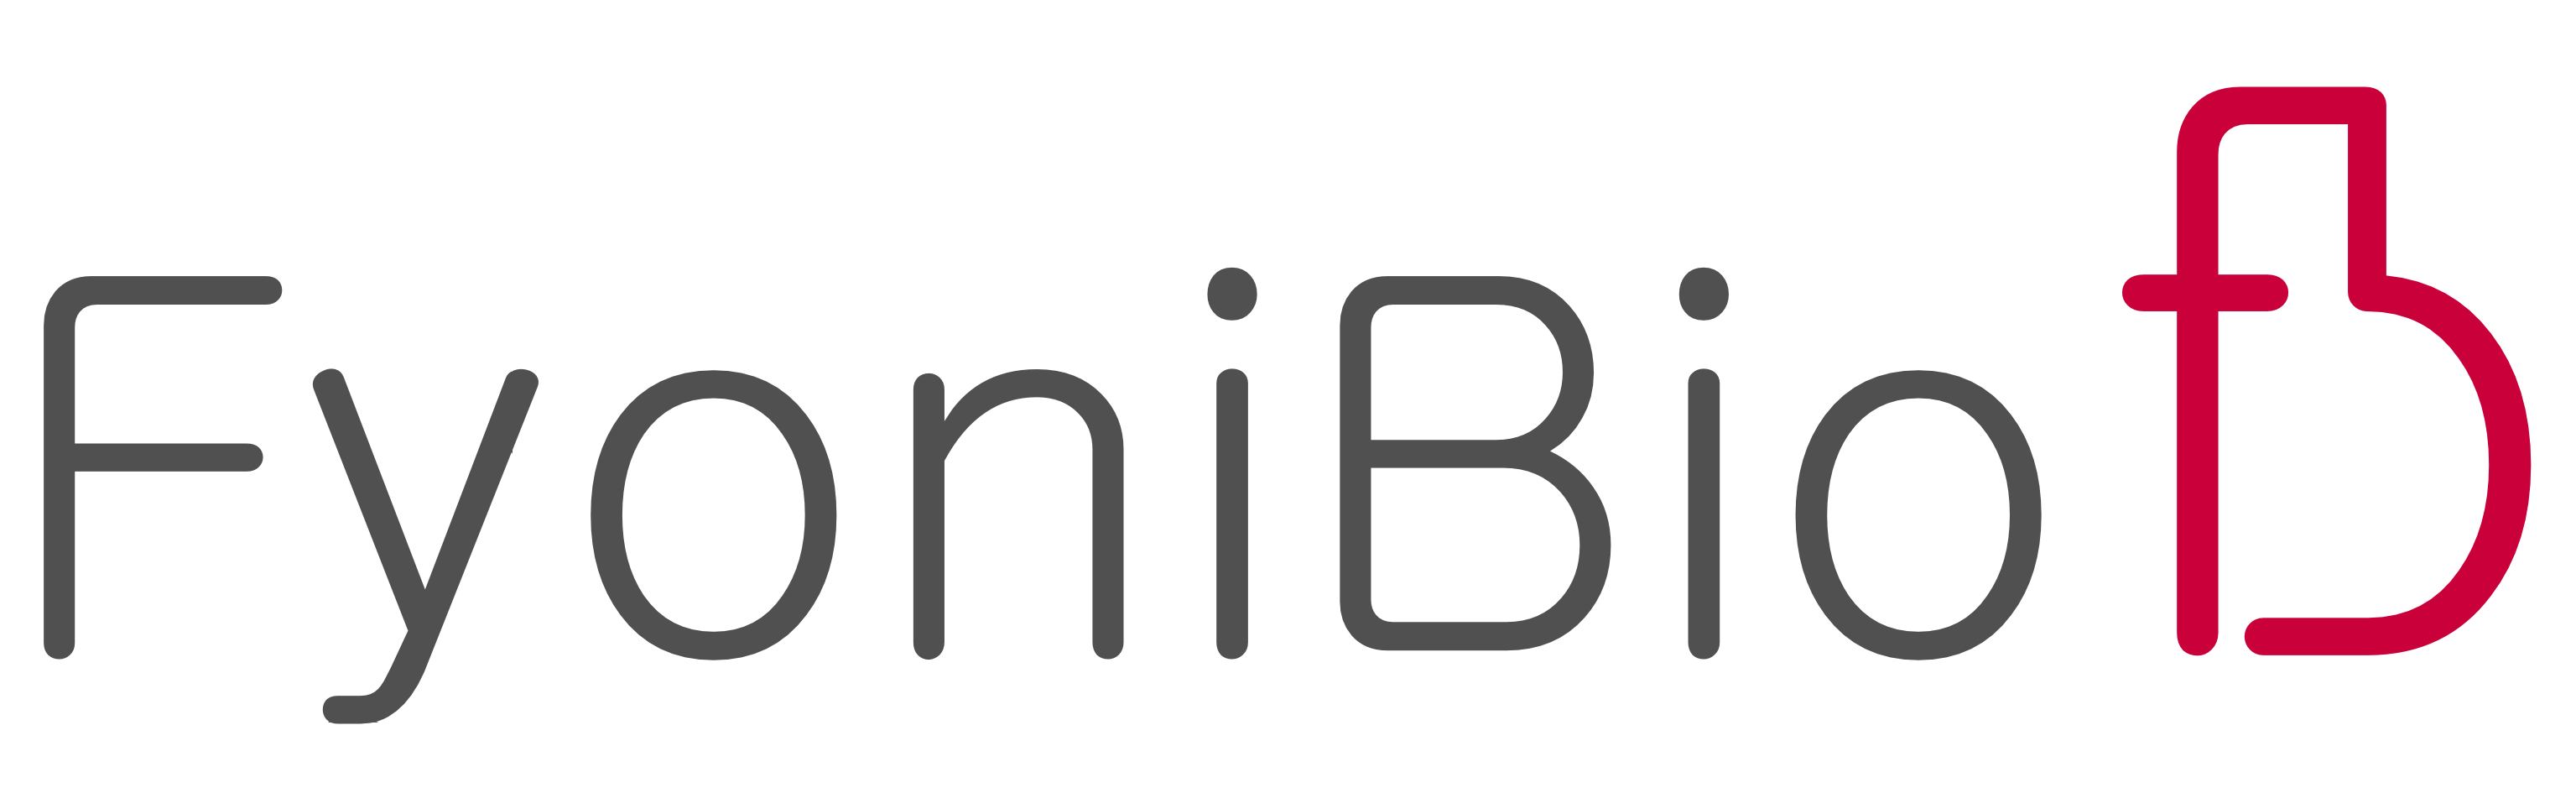 fyonibio-logo-1zeilig.png